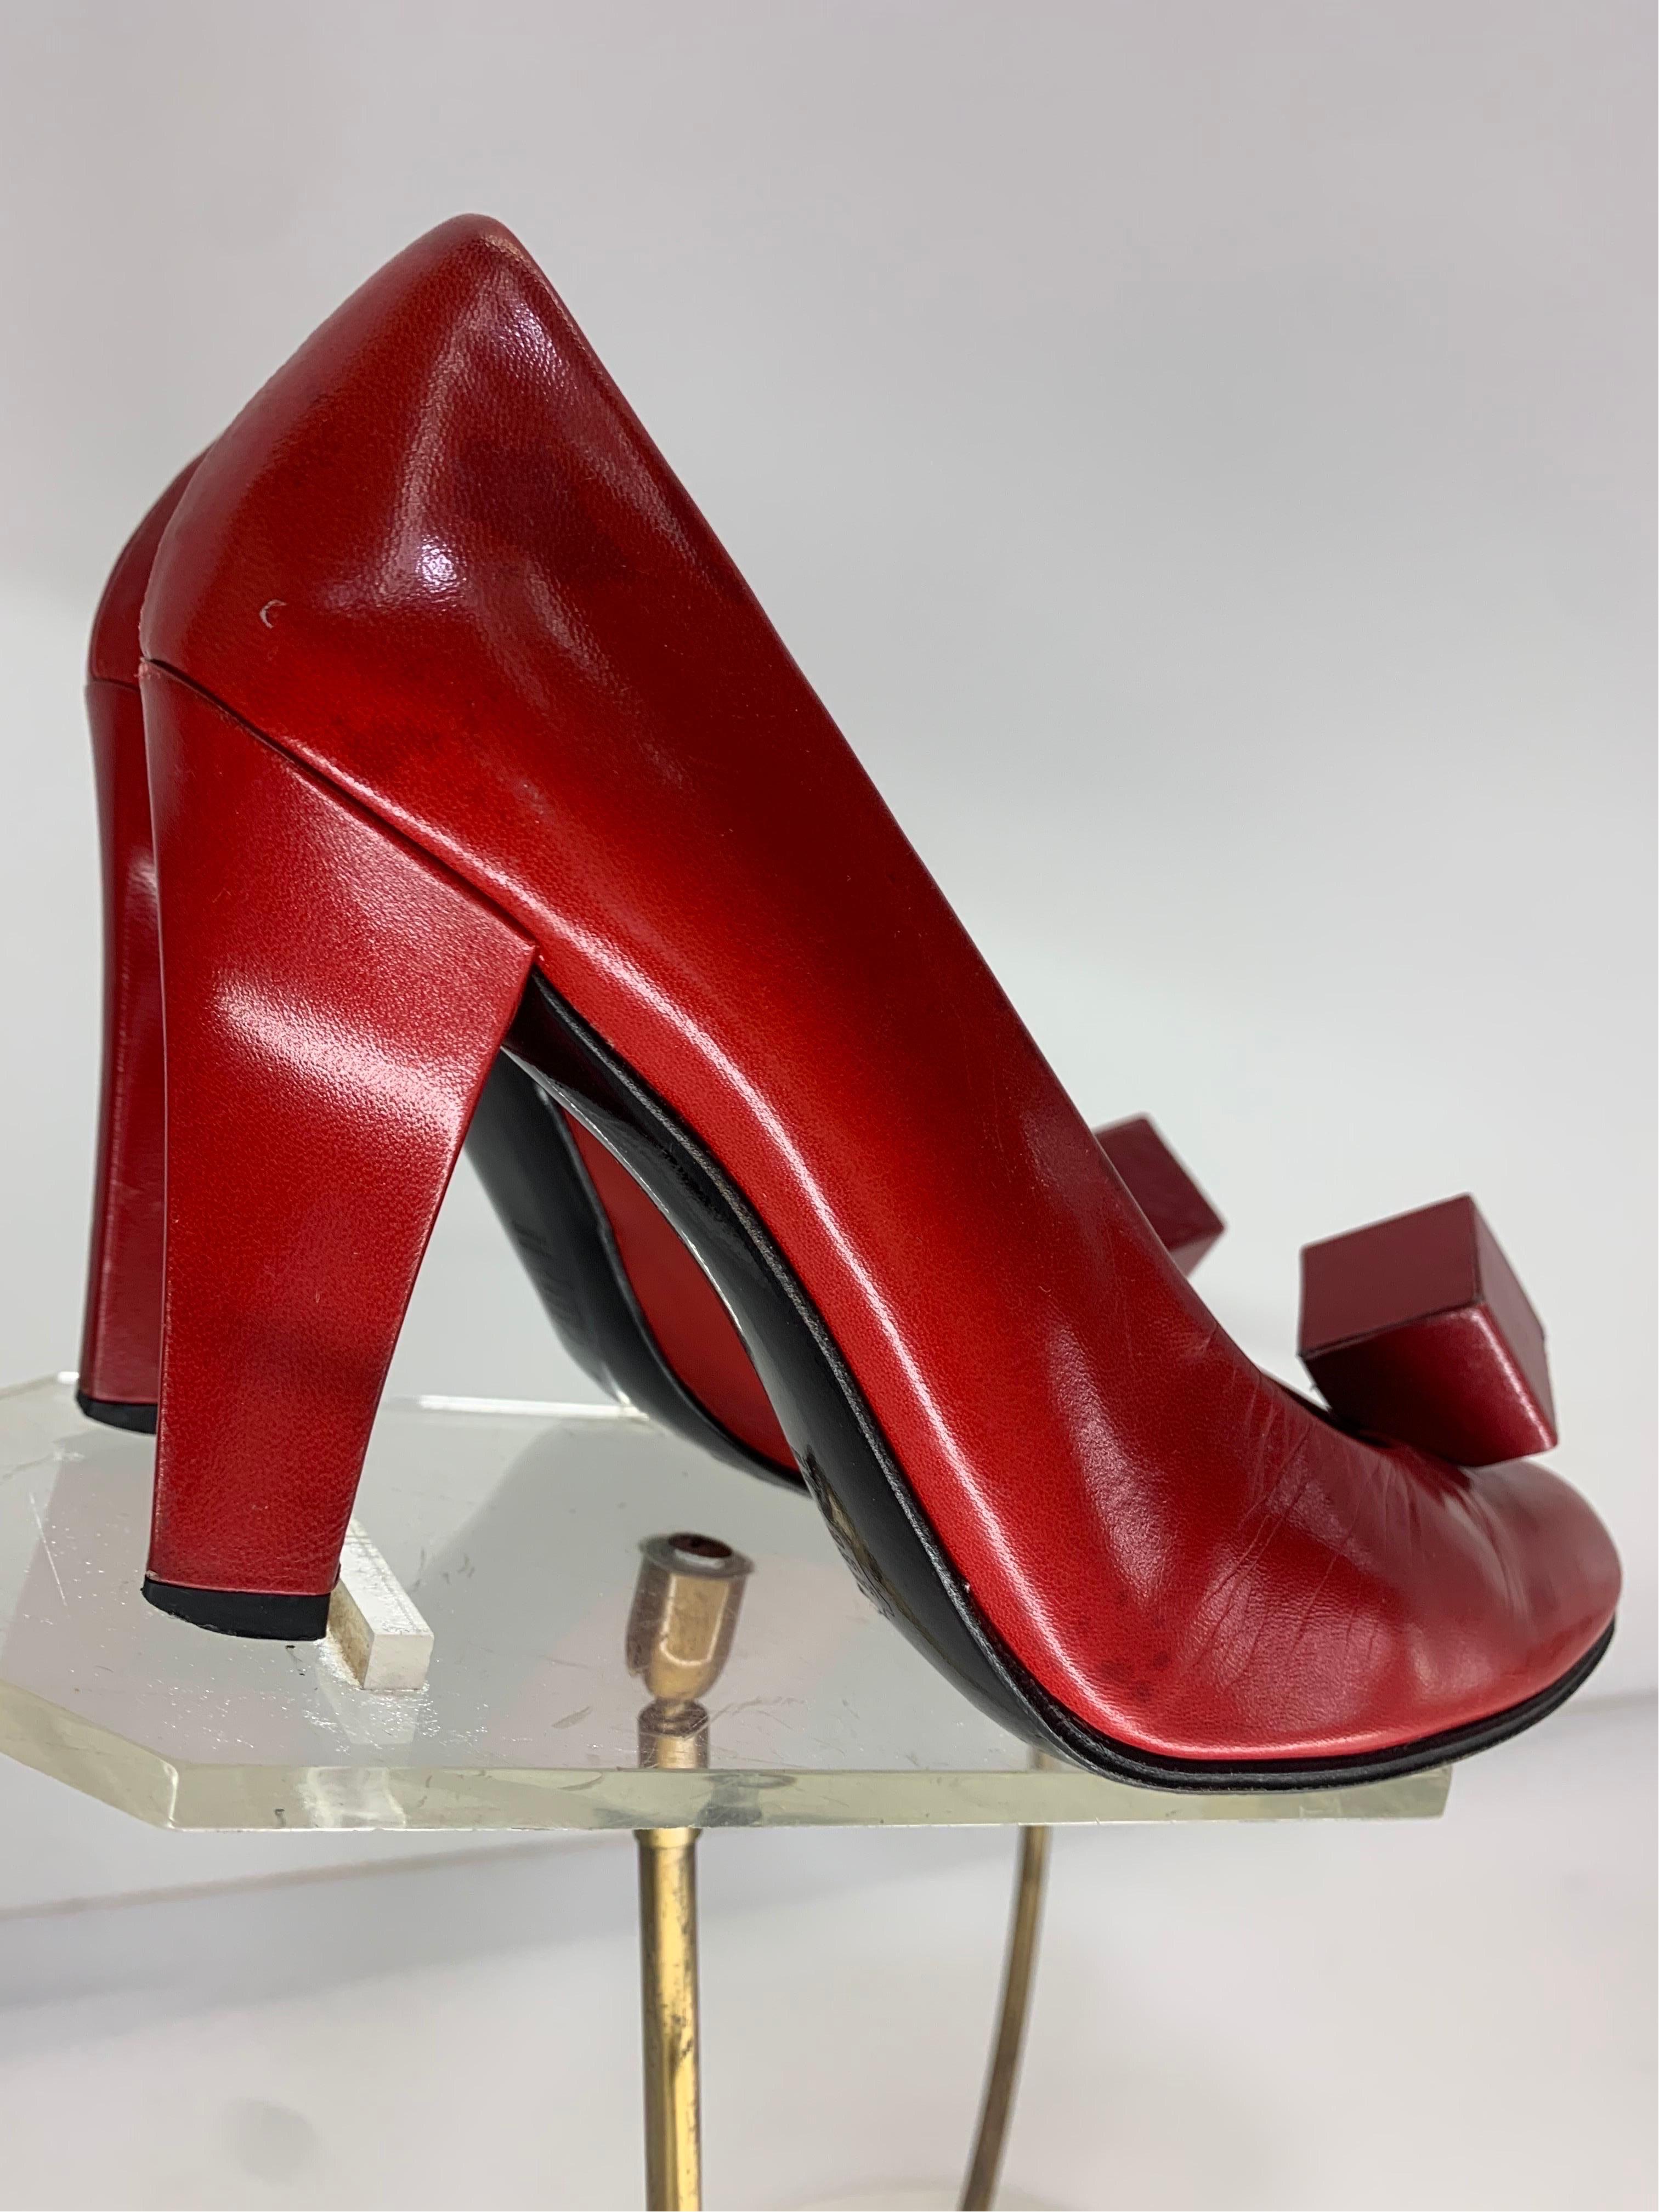 Une fabuleuse paire d'escarpins à talons hauts en cuir rouge cramoisi de Charles Jourdan, datant des années 1970, avec un ornement en forme de cube bien connu sur le bout du pied !  Taille 5 à 5.5